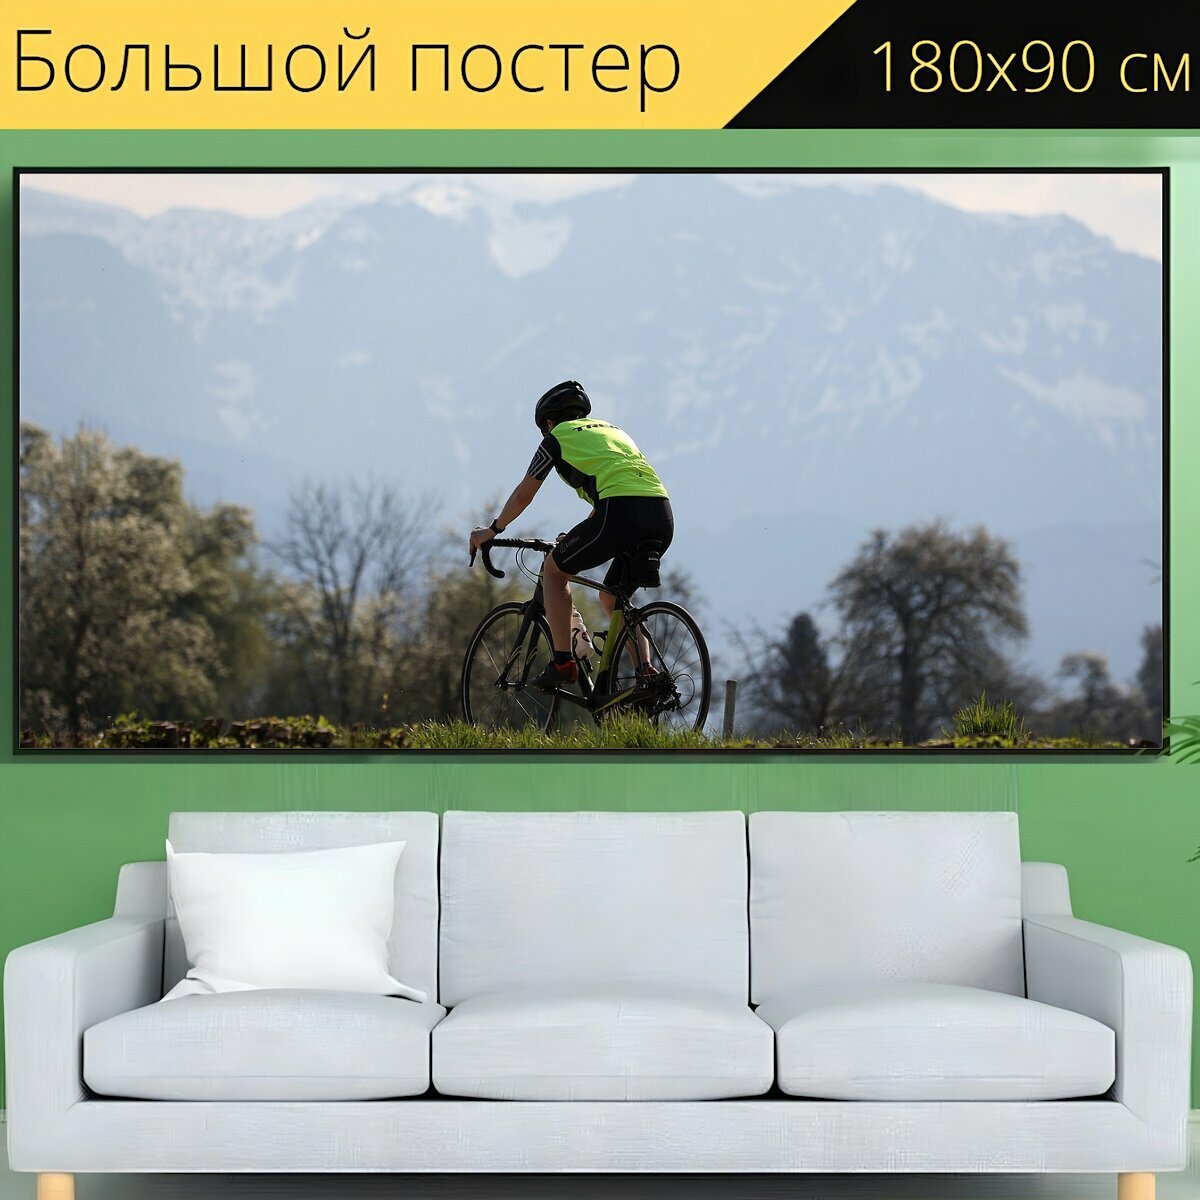 Большой постер "Велосипед, кататься на велосипеде, велосипедист" 180 x 90 см. для интерьера